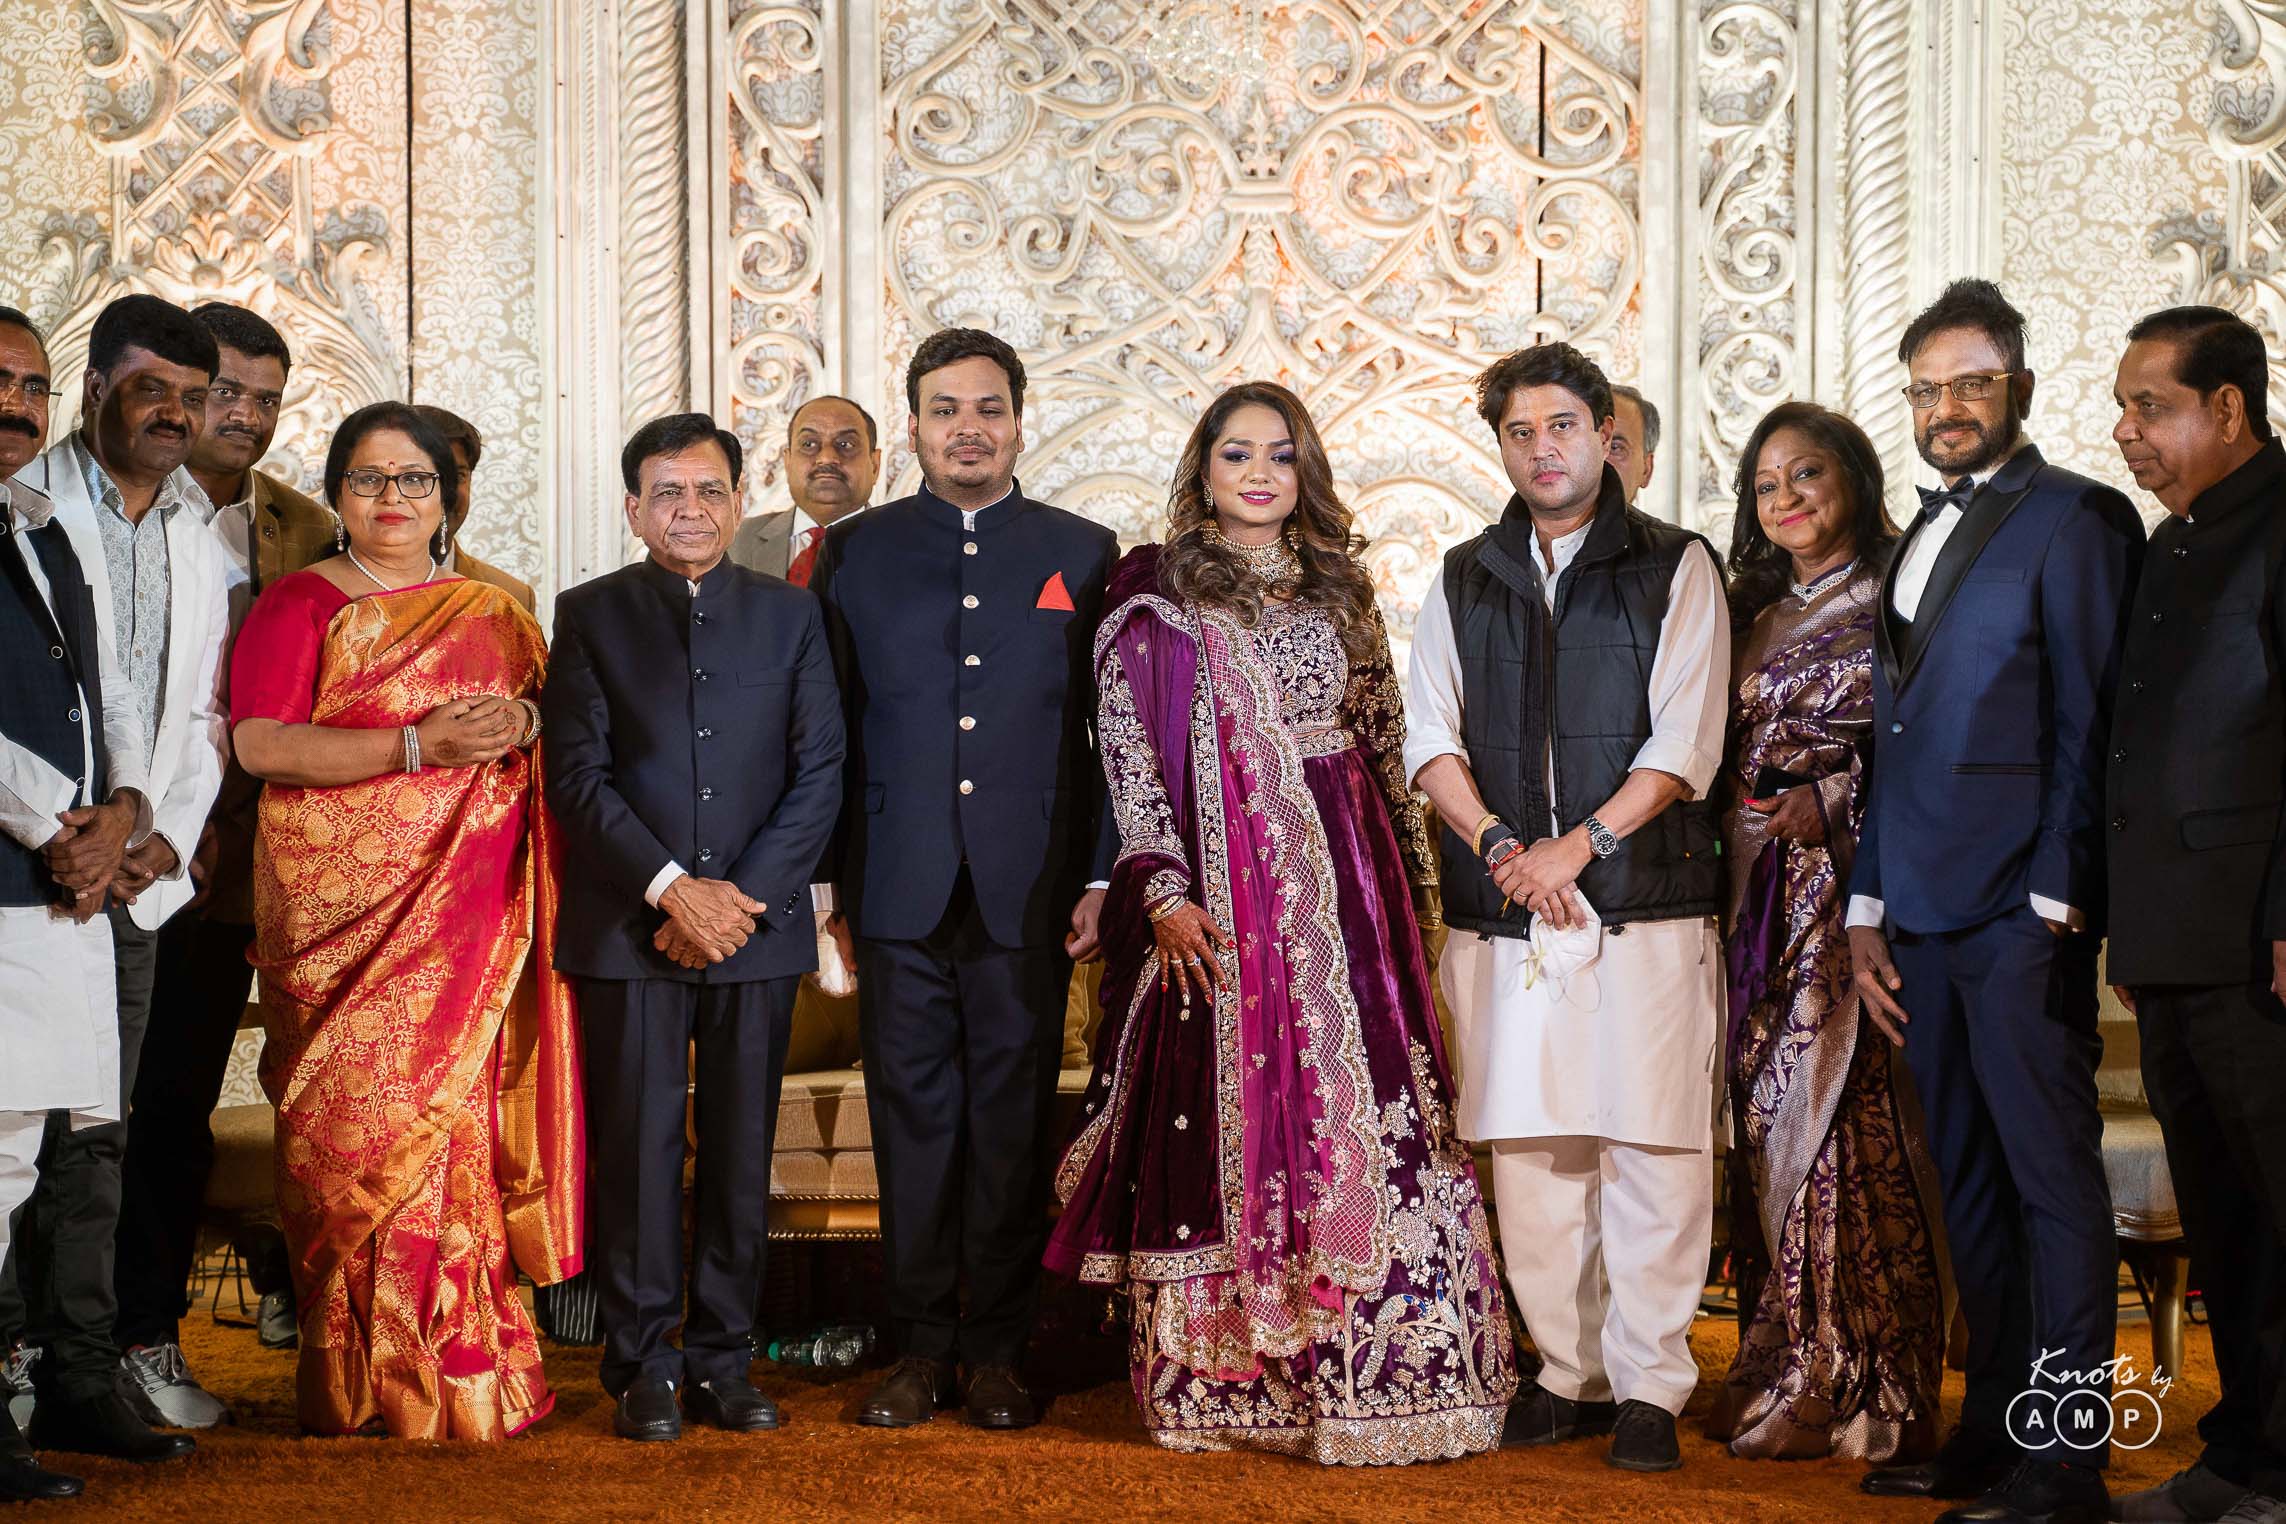 Grand-Wedding-at-Noor-Sabah-Palace-Bhopal-93-of-96